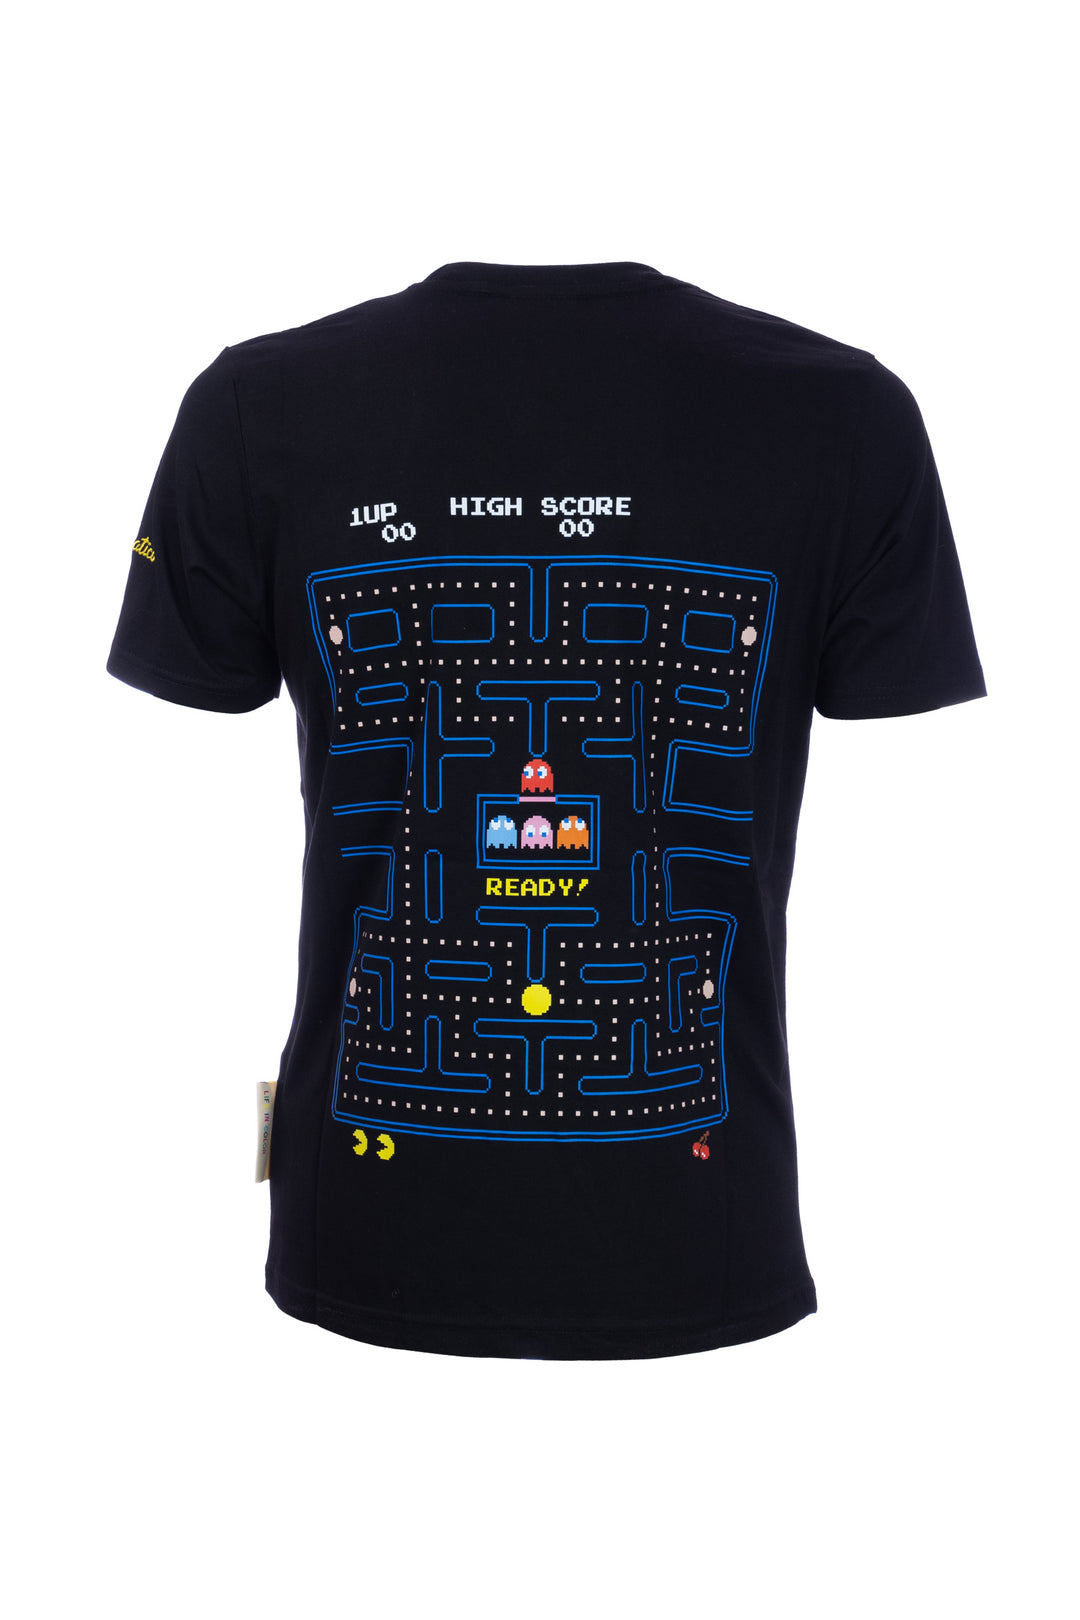 TEMATICO T-shirt nera in cotone con stampa Pac-Man sul petto e sulla schiena - Mancinelli 1954